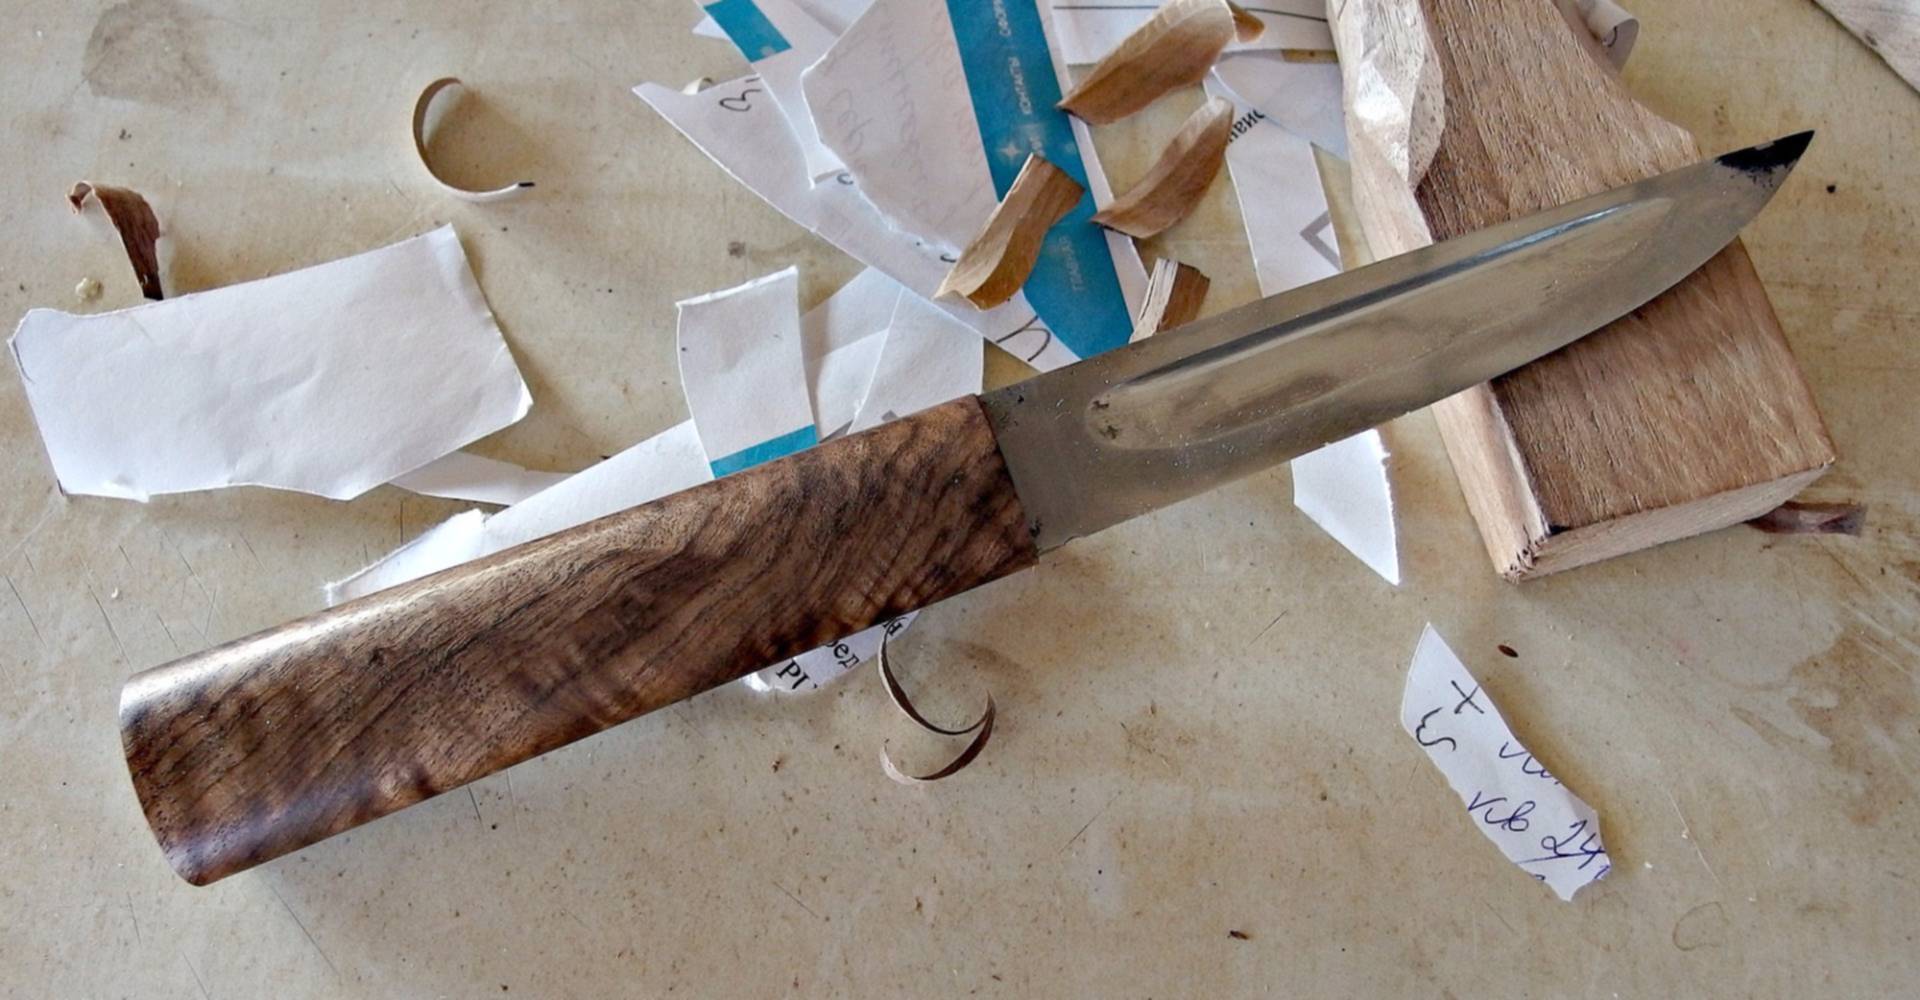 Ручки для ножей из дерева своими руками фото